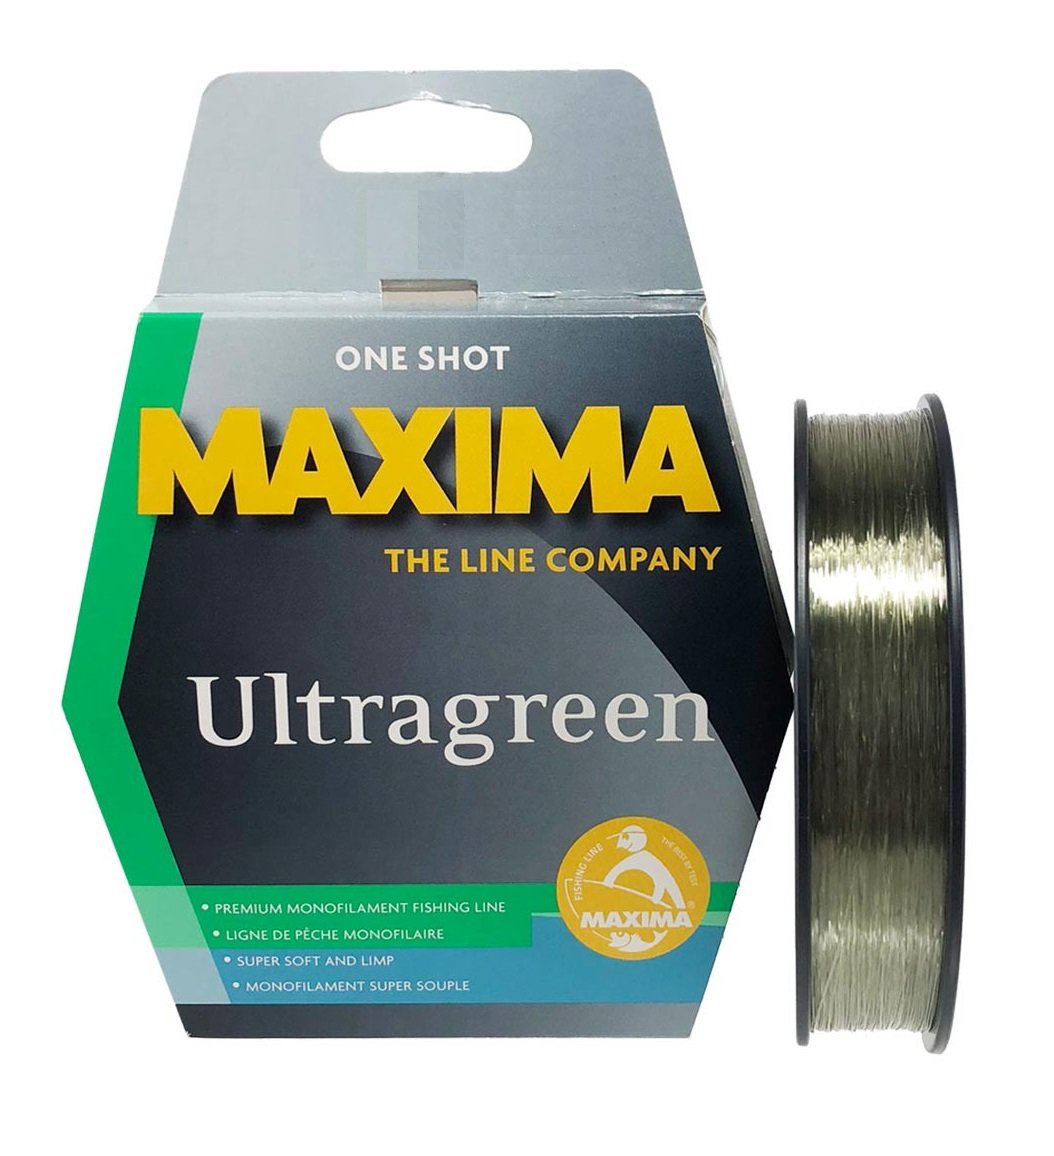 Maxima Ultragreen One Shot Monofilament Line (20lb/230m/0.42mm)(Green)